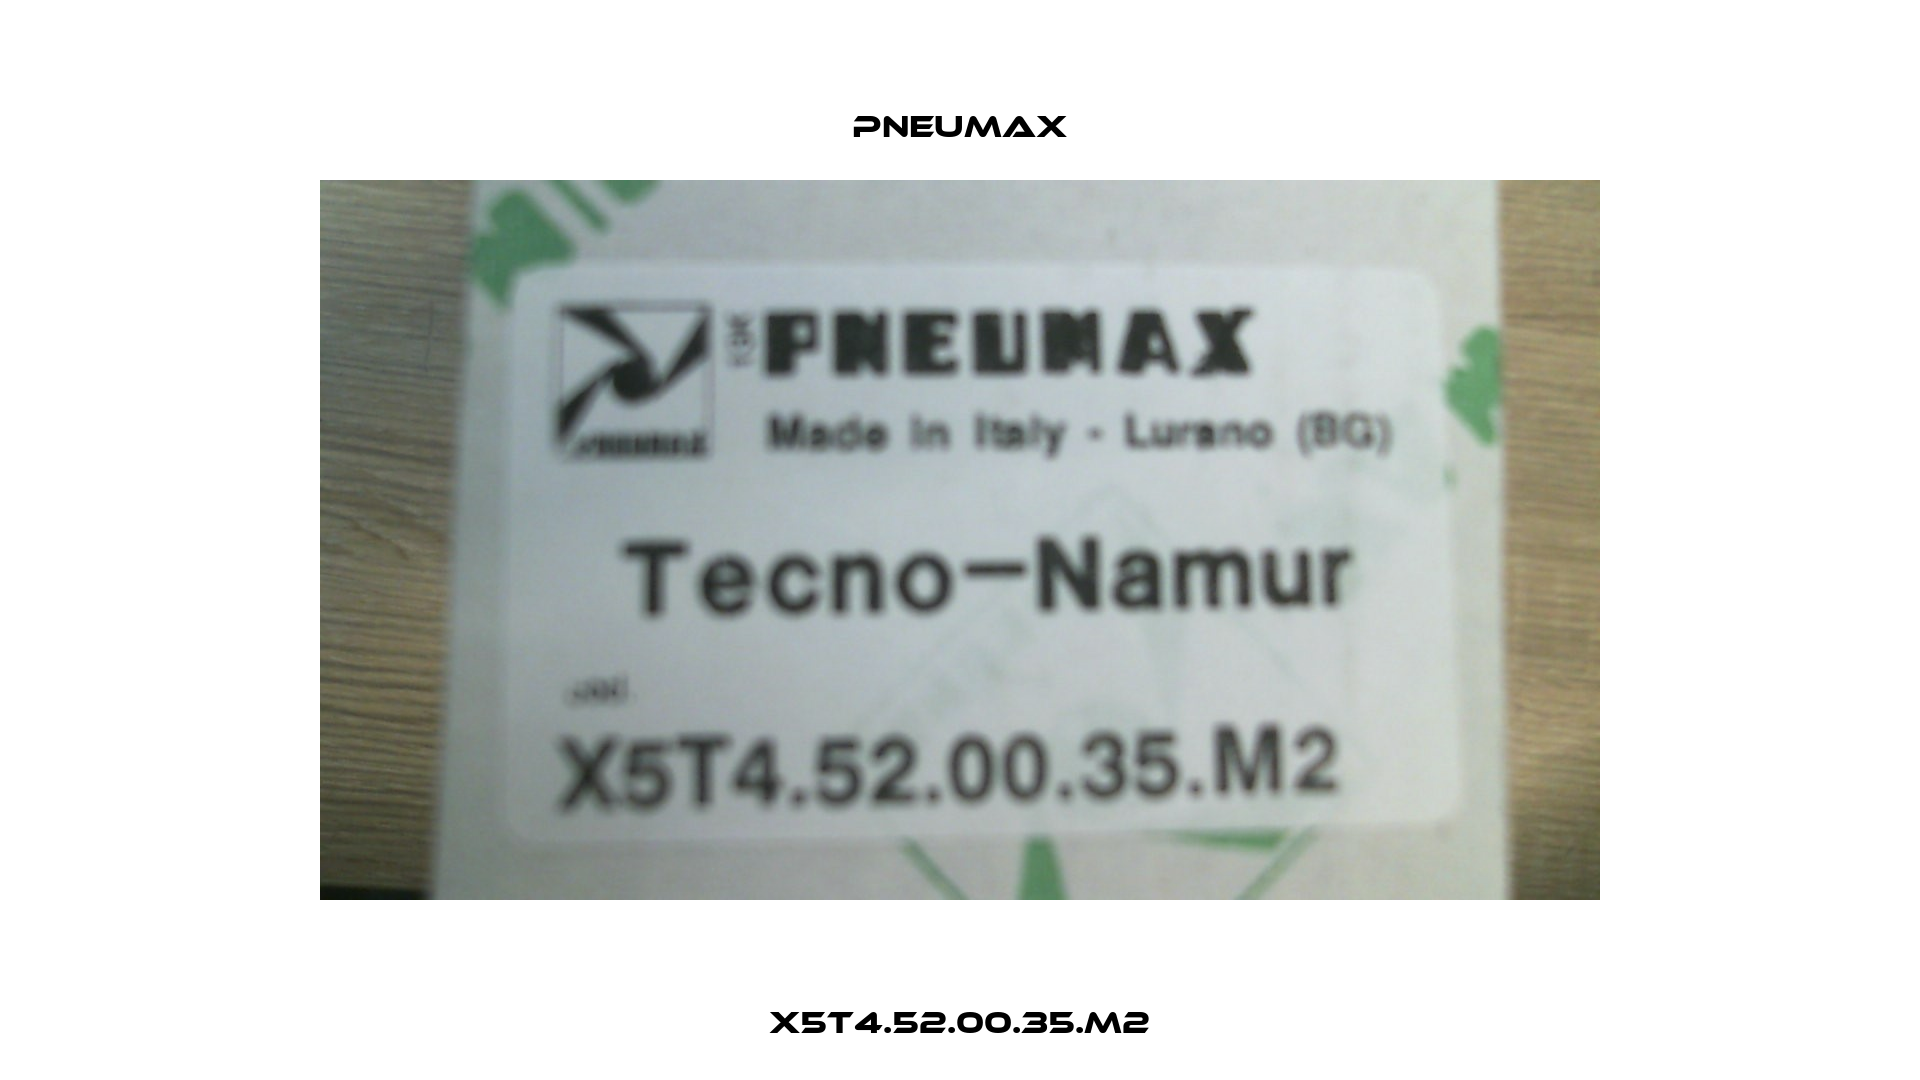 X5T4.52.00.35.M2 Pneumax